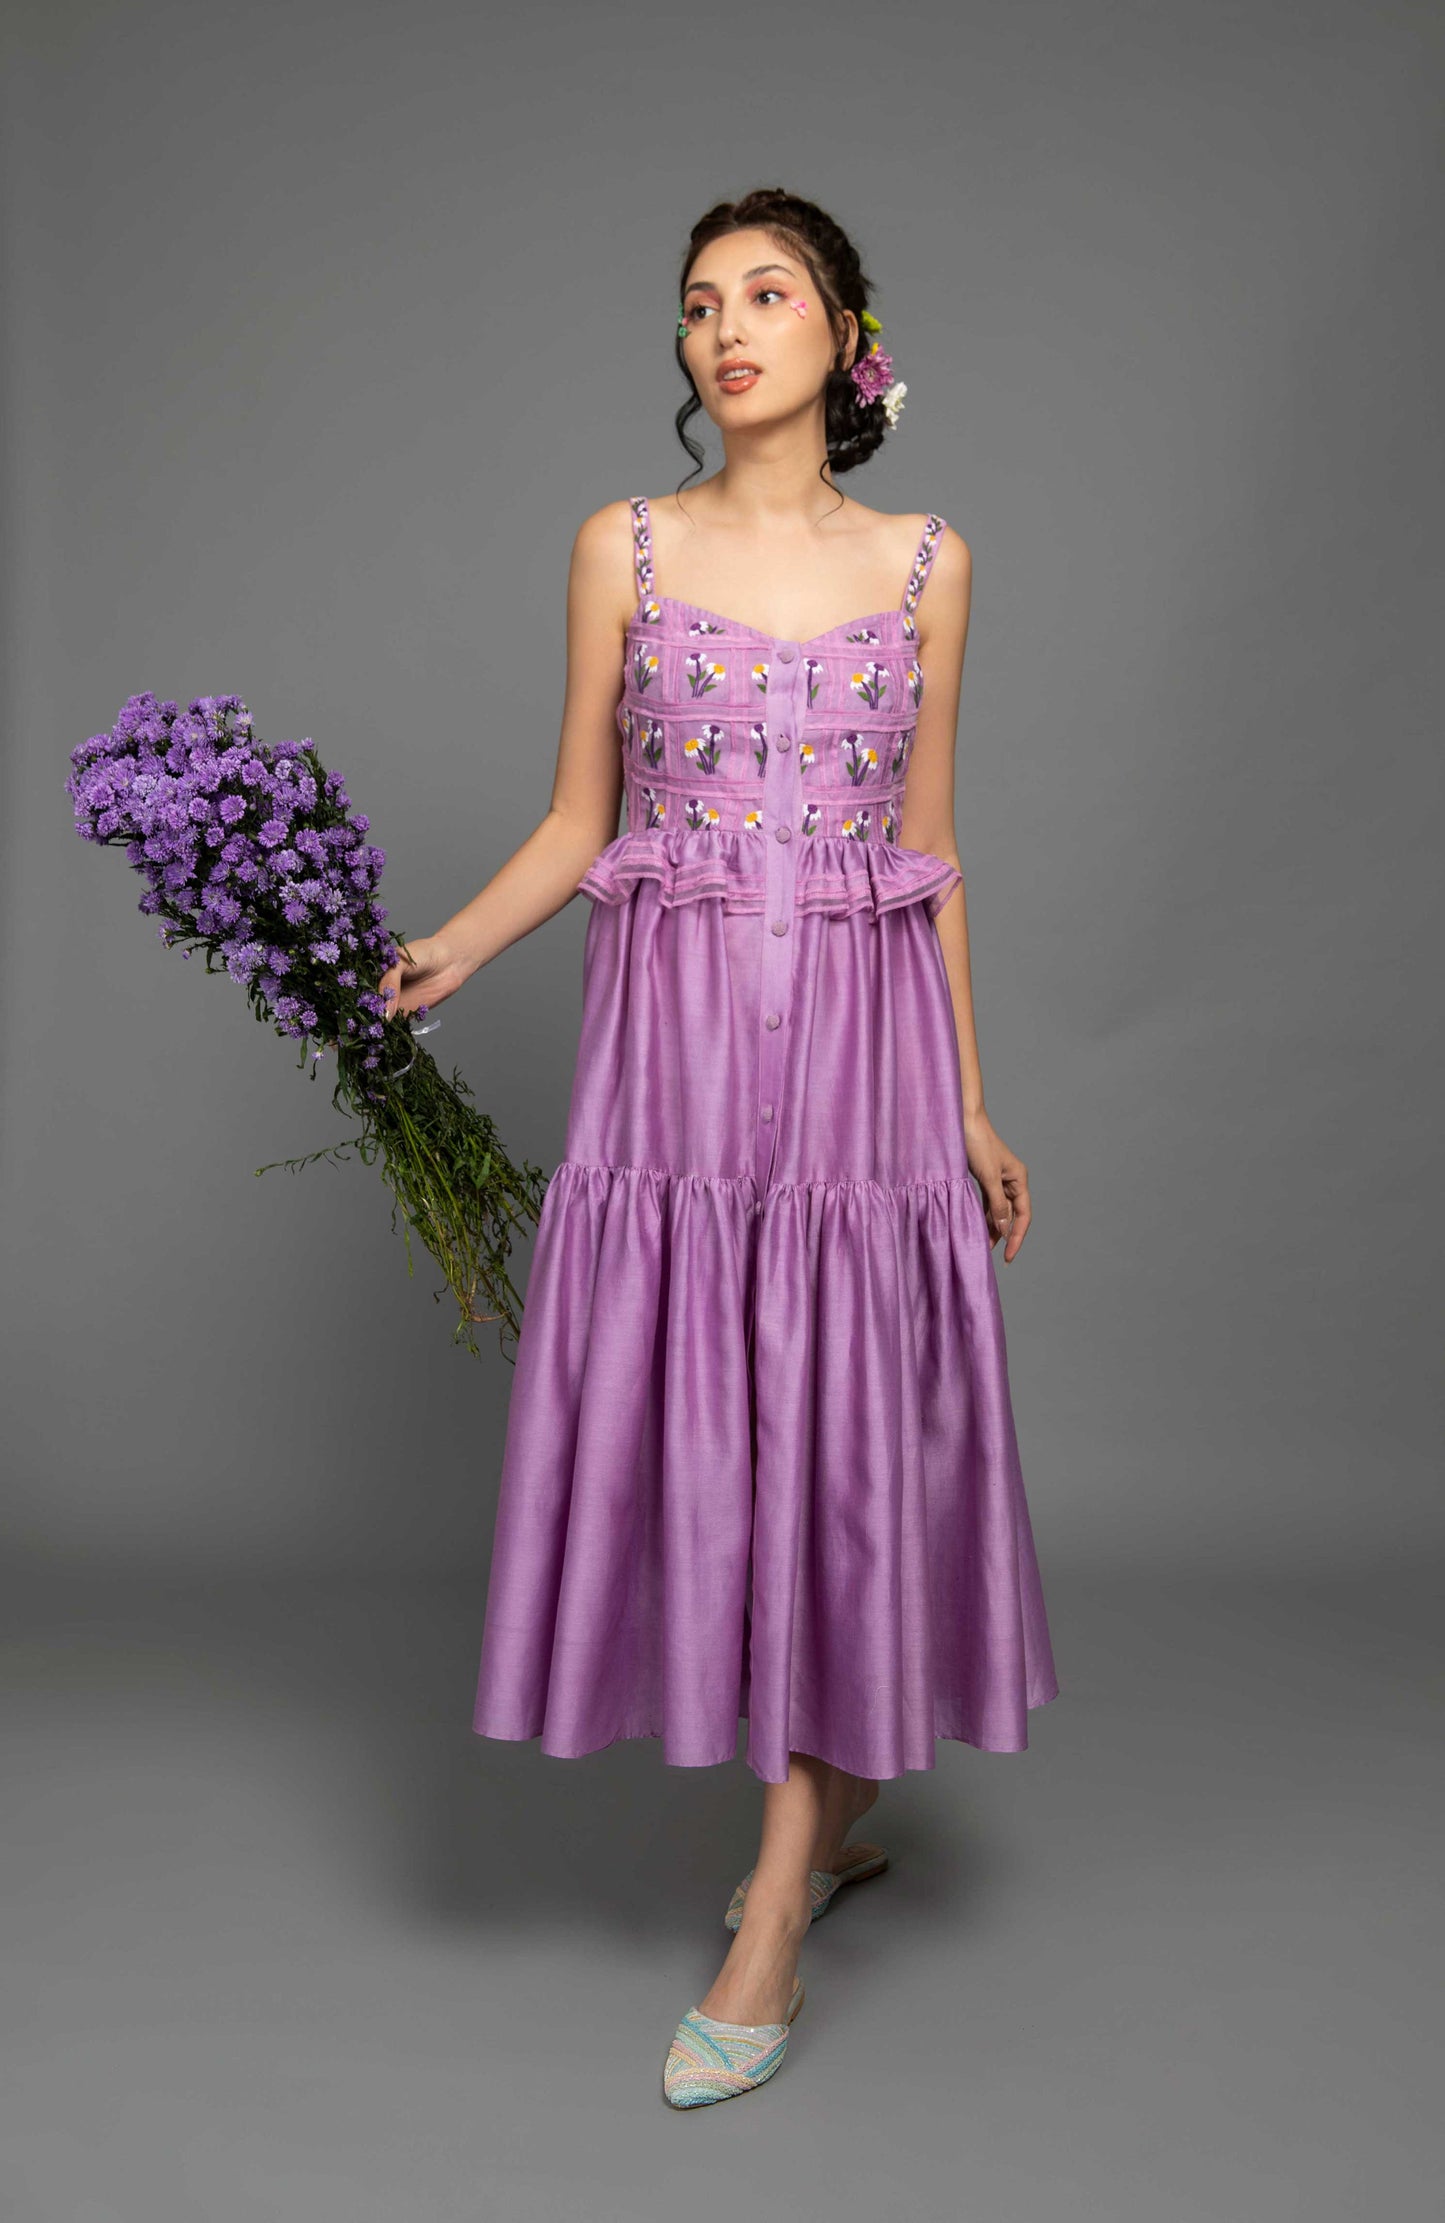 baavli Luxury designer Lavender Dress. Baavli luxury designer store in khan market.